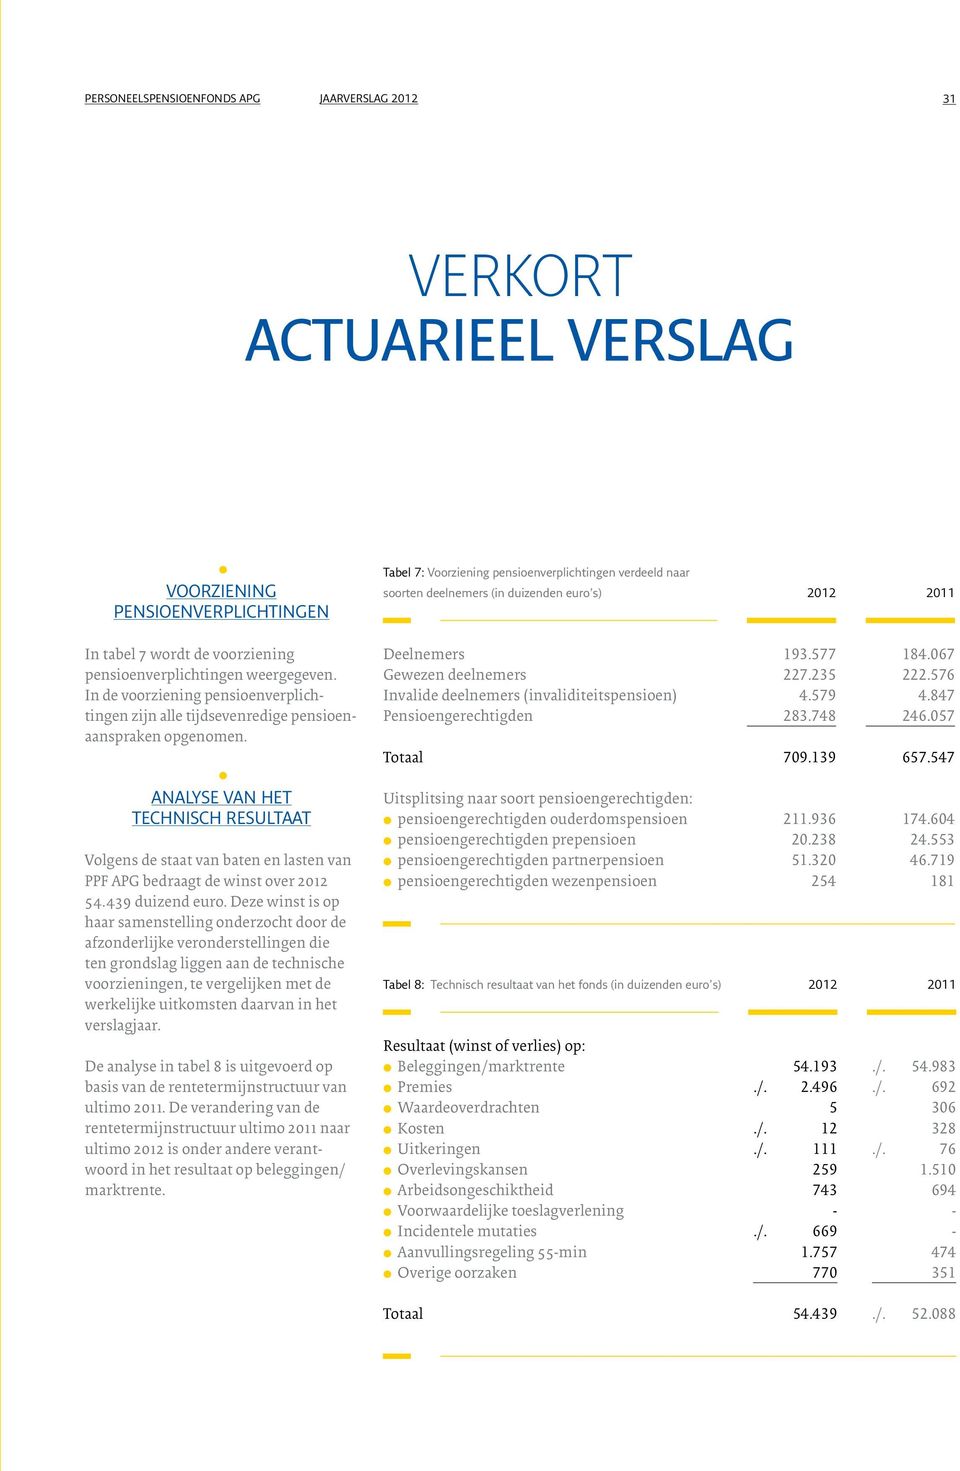 Anayse van het technisch resutaat Vogens de staat van baten en asten van PPF APG bedraagt de winst over 2012 54.439 duizend euro.